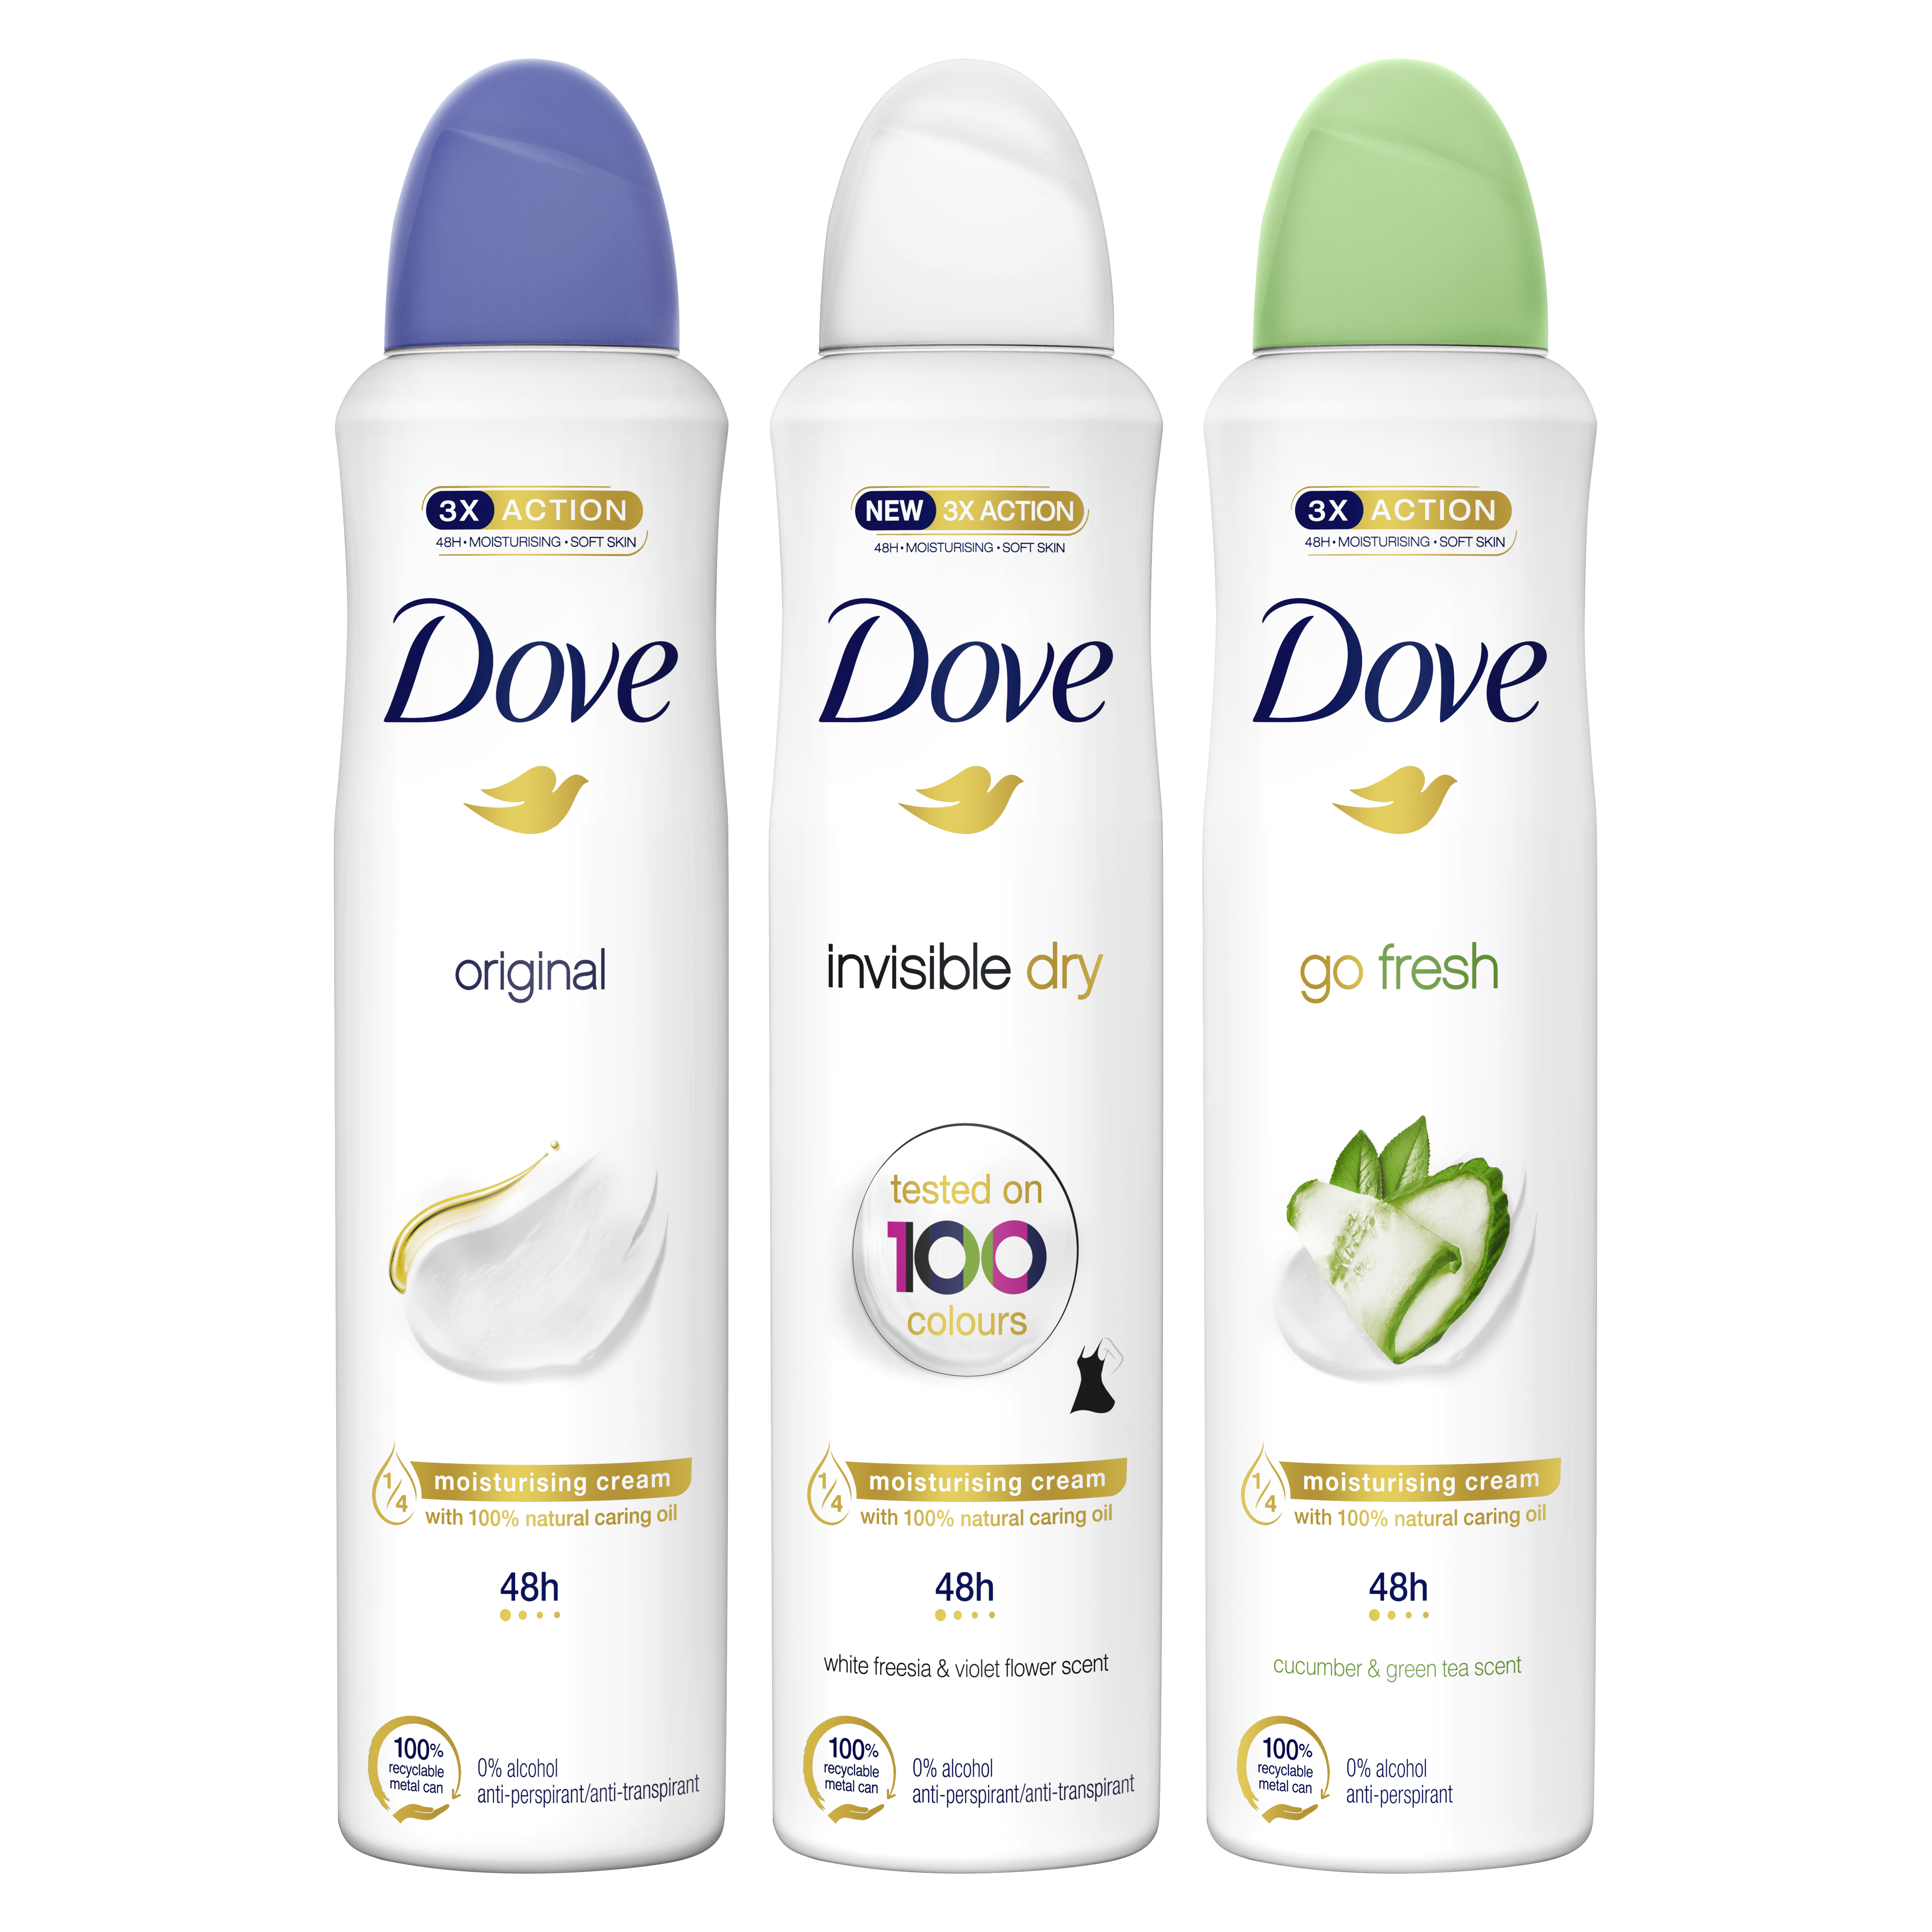 Pack de 3 desodorantes antitranspirantes Dove Original + Invisible Dry + Go Fresh por sólo 9.01€ ¡¡20% de descuento!!